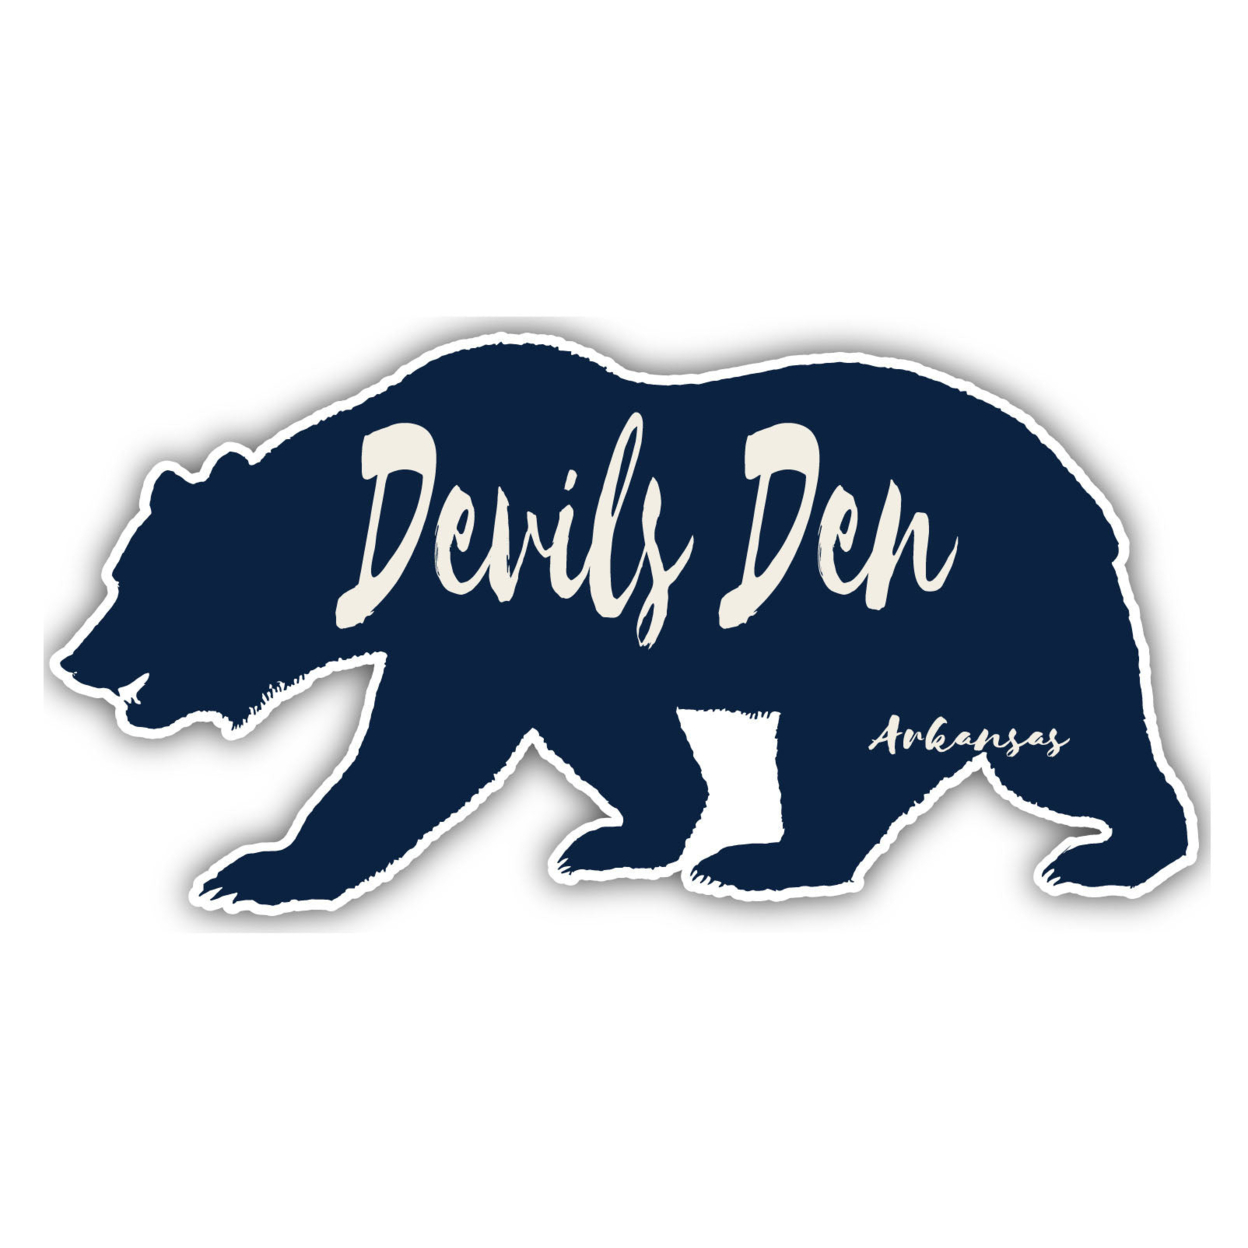 Devils Den Arkansas Souvenir Decorative Stickers (Choose Theme And Size) - 4-Pack, 4-Inch, Bear